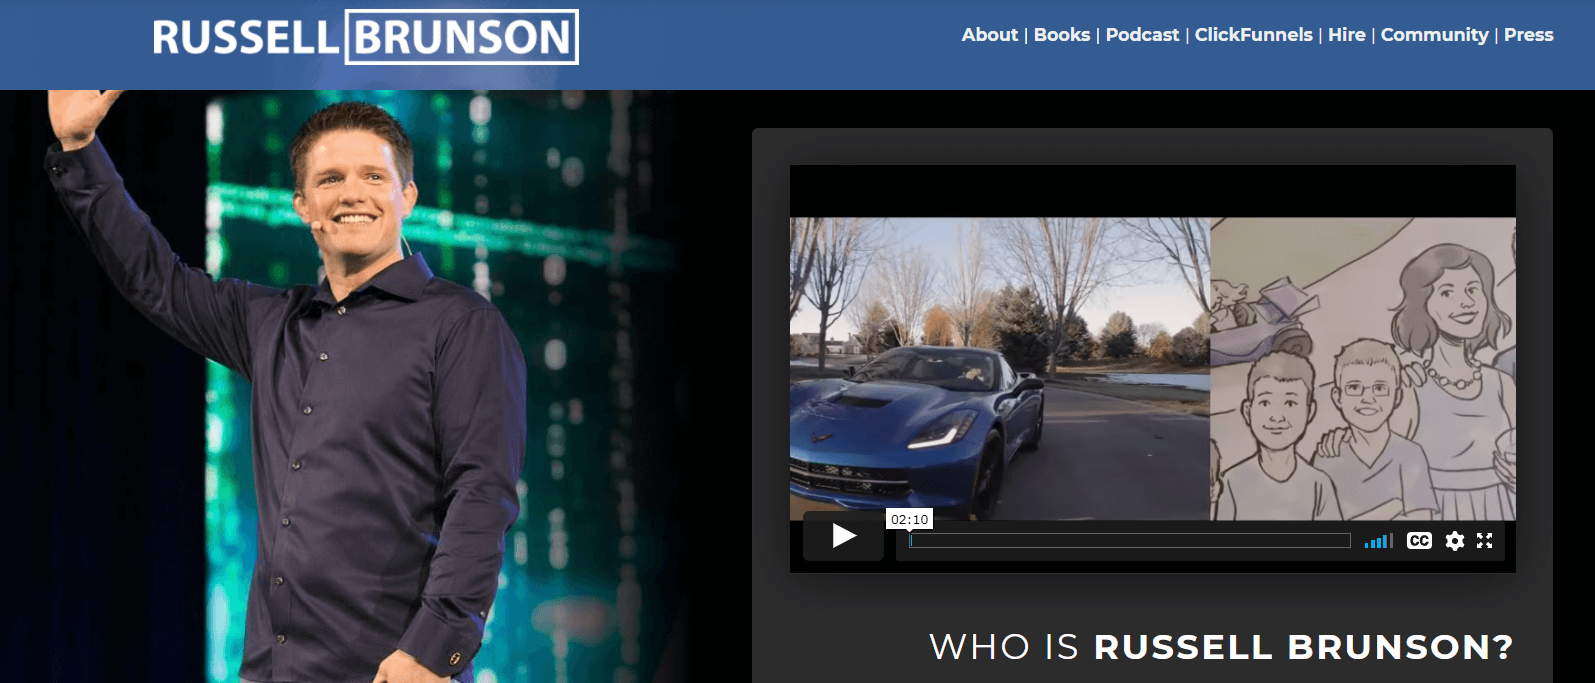 A screenshot showing Russell Brunson's website.